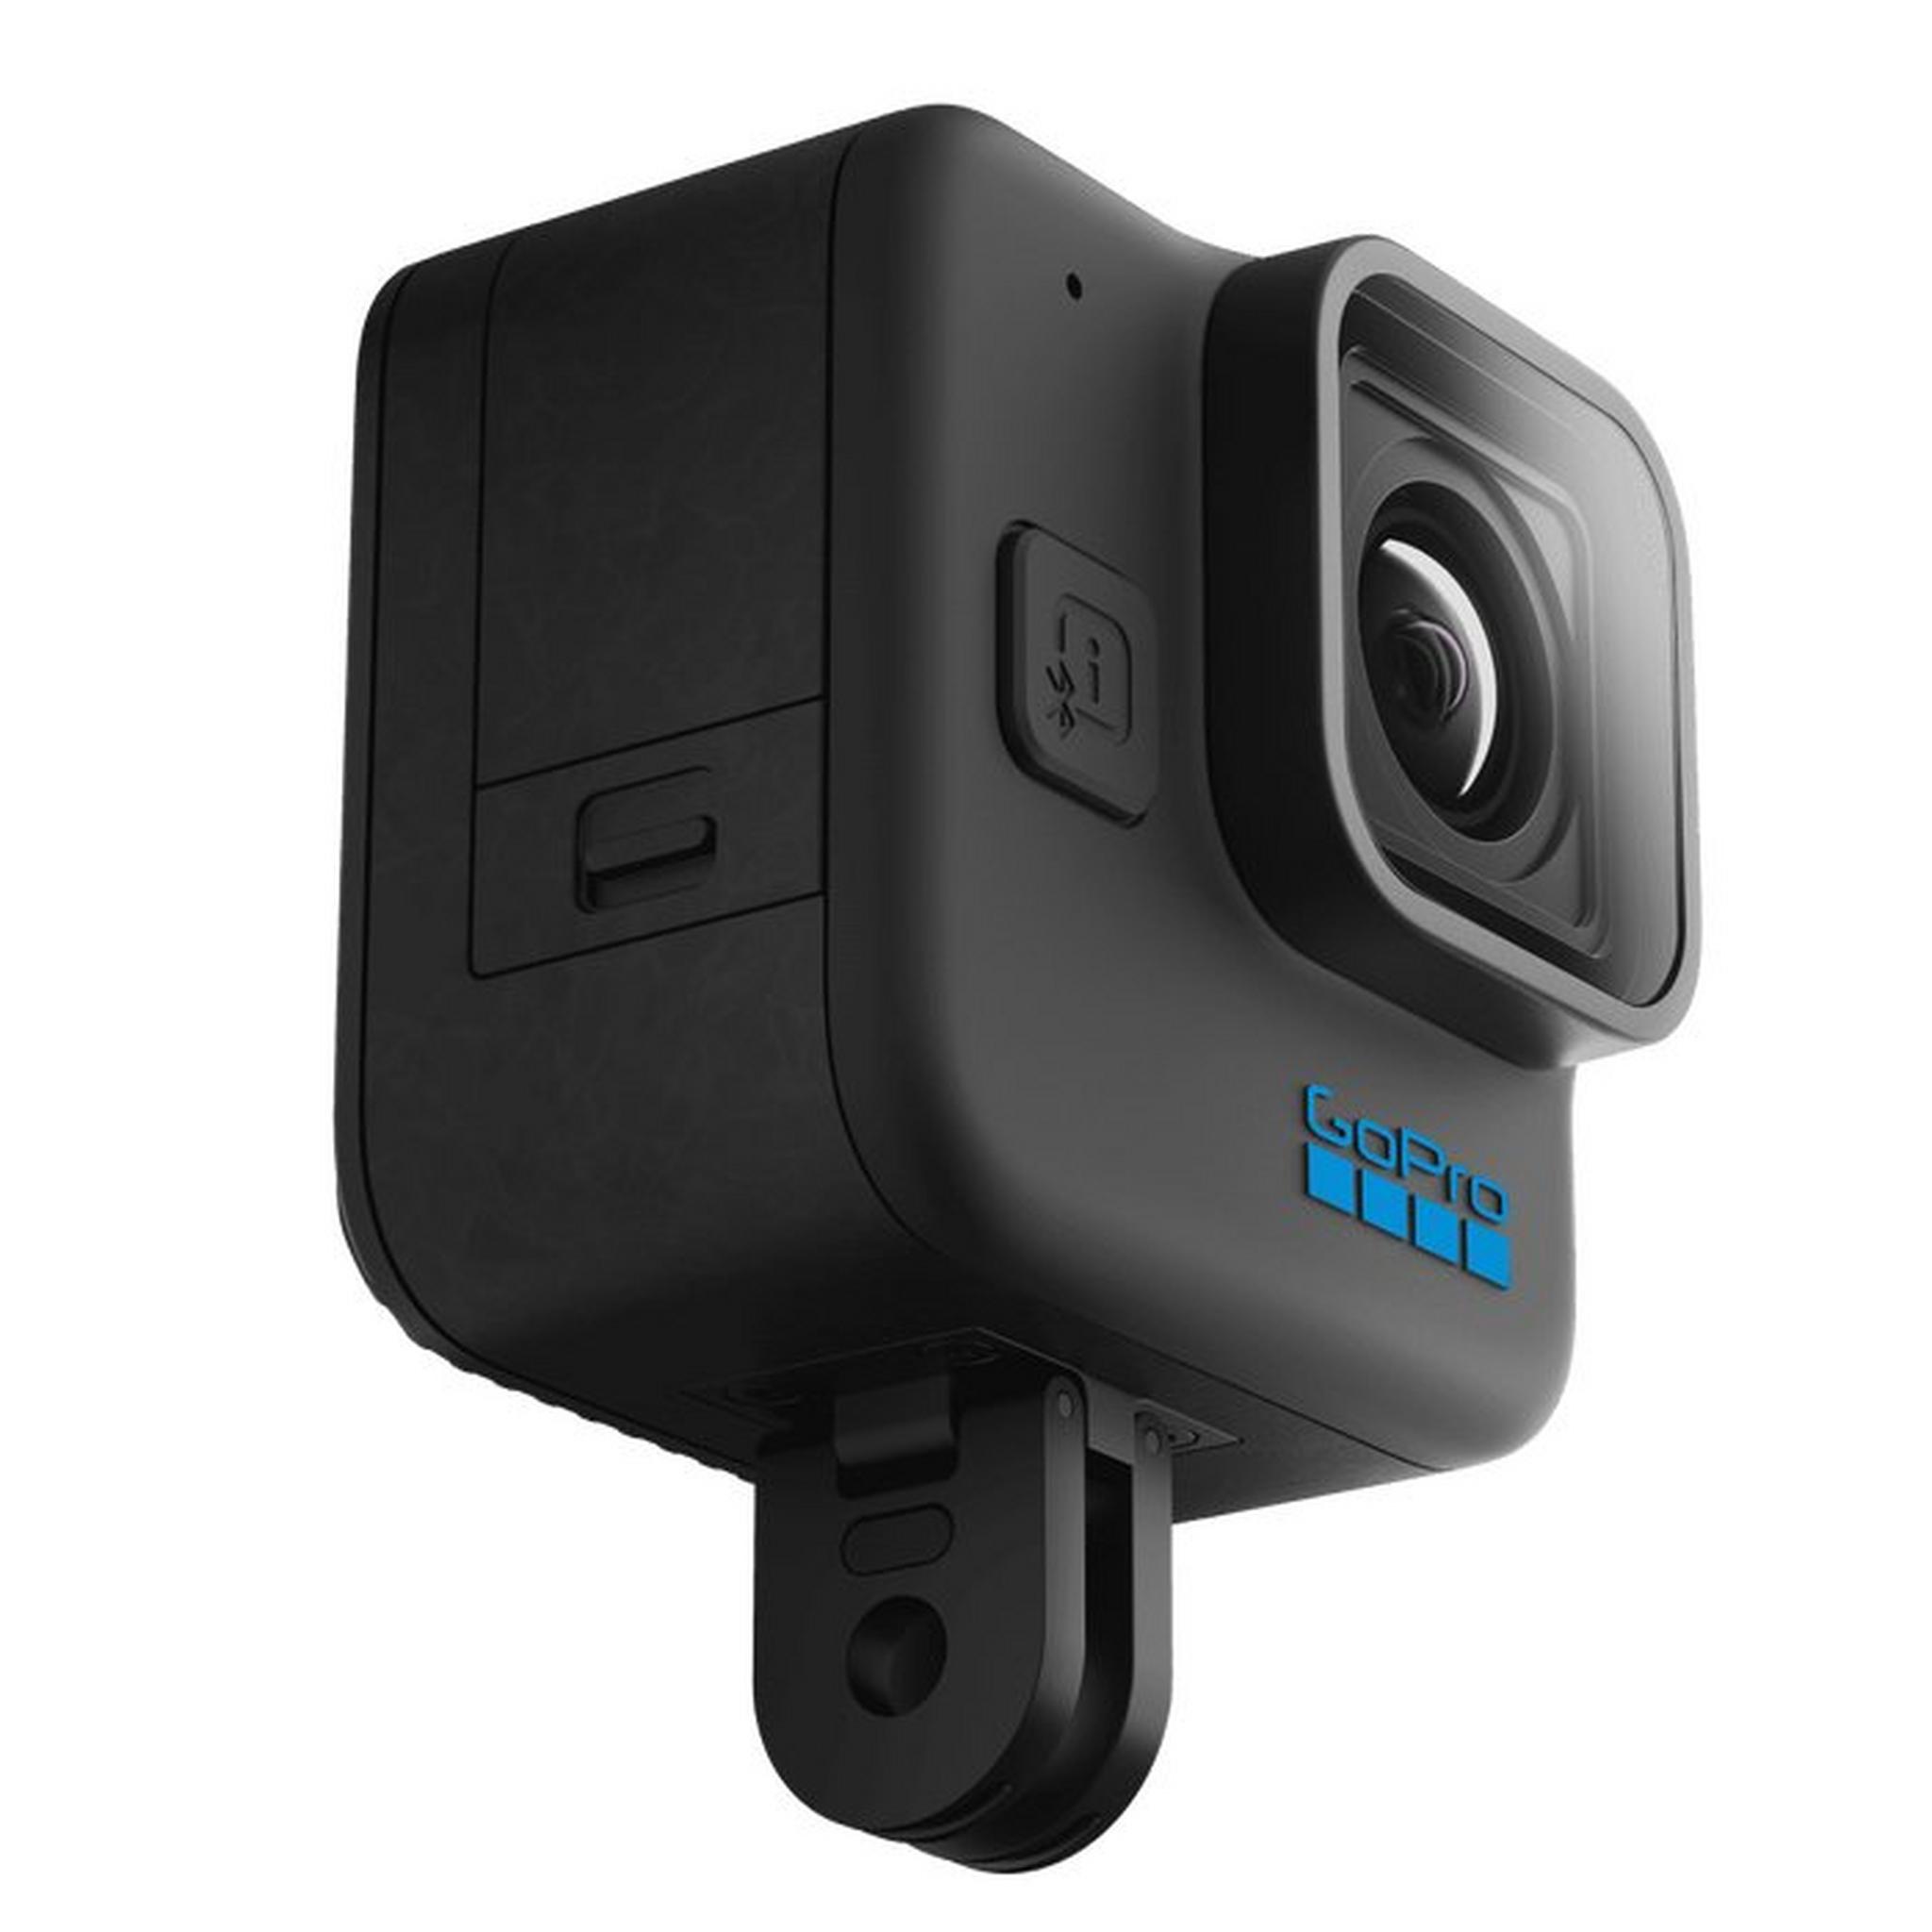 كاميرا حركة هيرو11 مدمجة صغيرة من جو برو، بدقة تصل الى 27ميجابيكسل، ودقة فيديو 5.3كيه - أسود